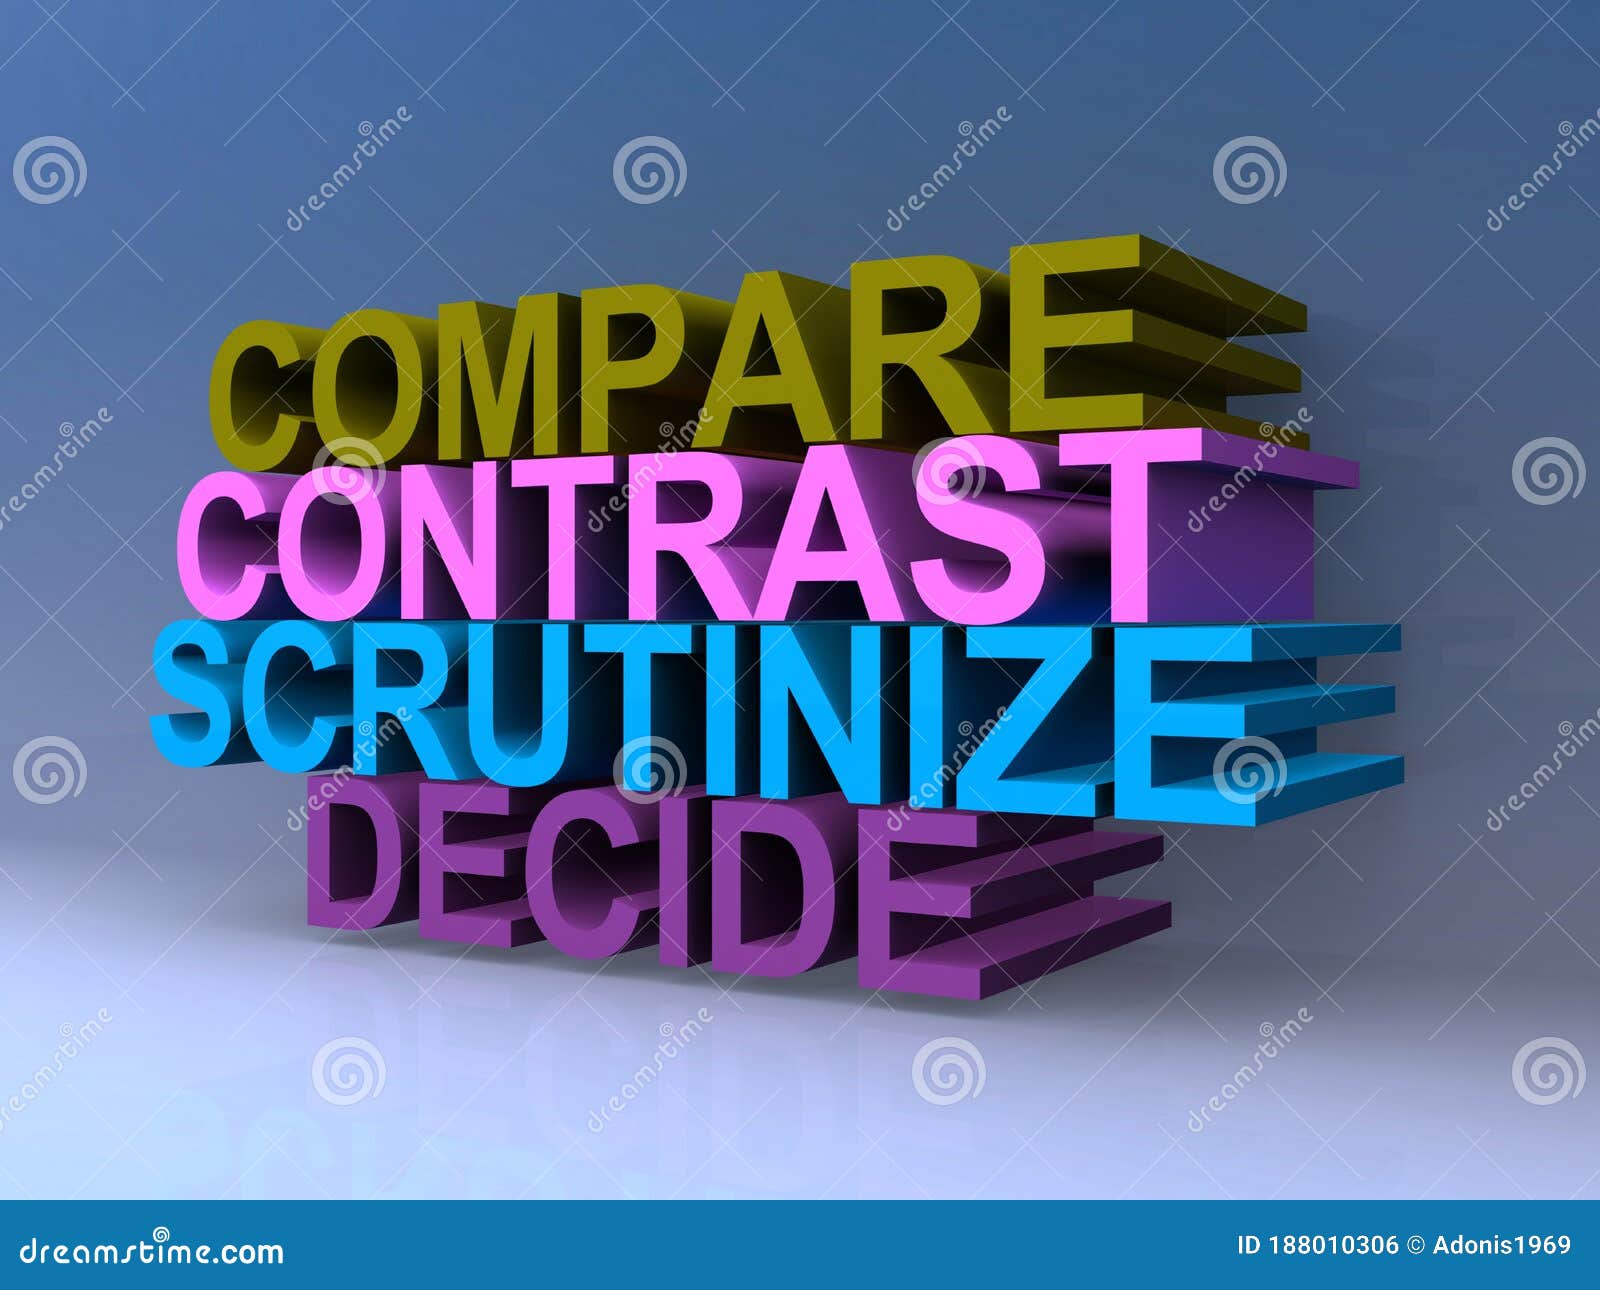 compare contrast scrutinize decide